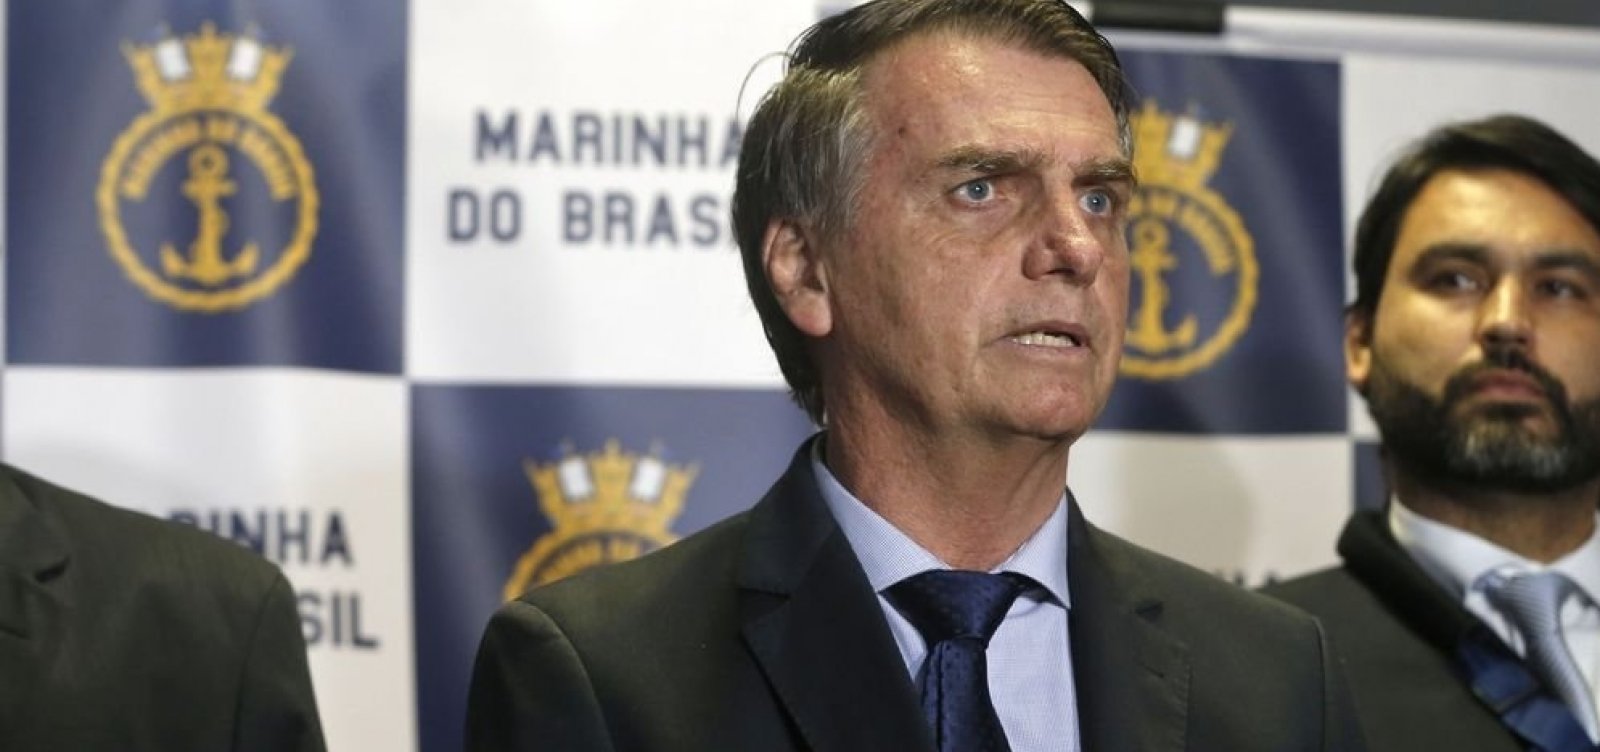 'Se errei, arco com responsabilidade', diz Bolsonaro sobre empréstimos